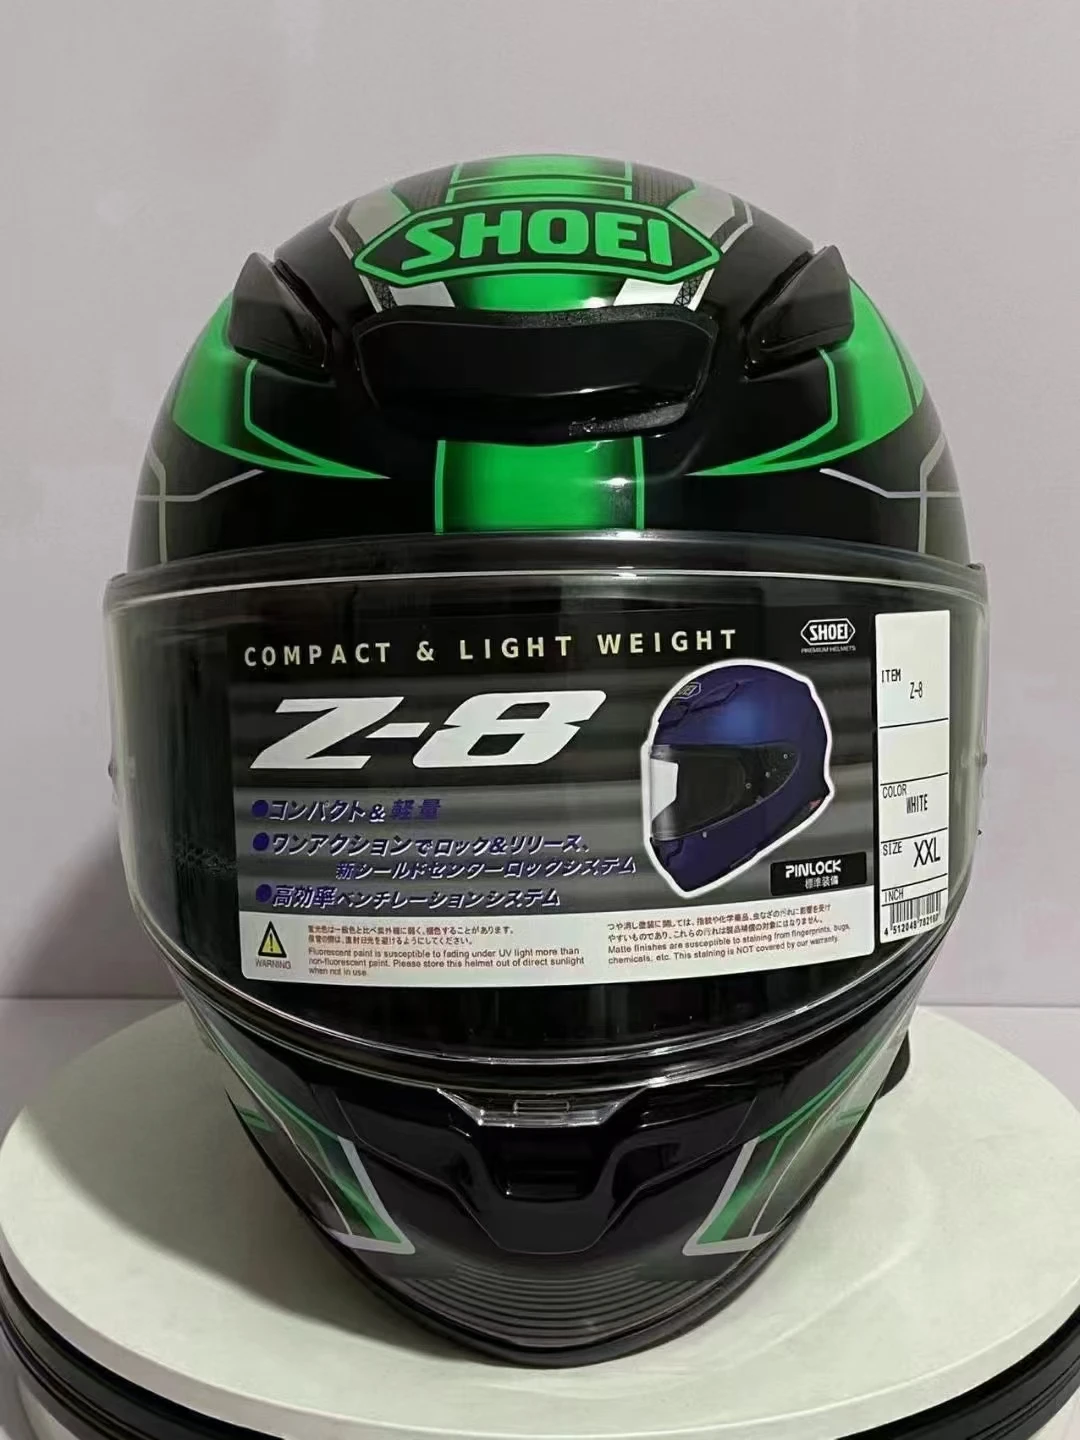 Мотоциклетный шлем SHOEI Z8 ka-wa с полным лицом, зеленый шлем для езды на мотокроссе, шлем для мотобайка Изображение 3